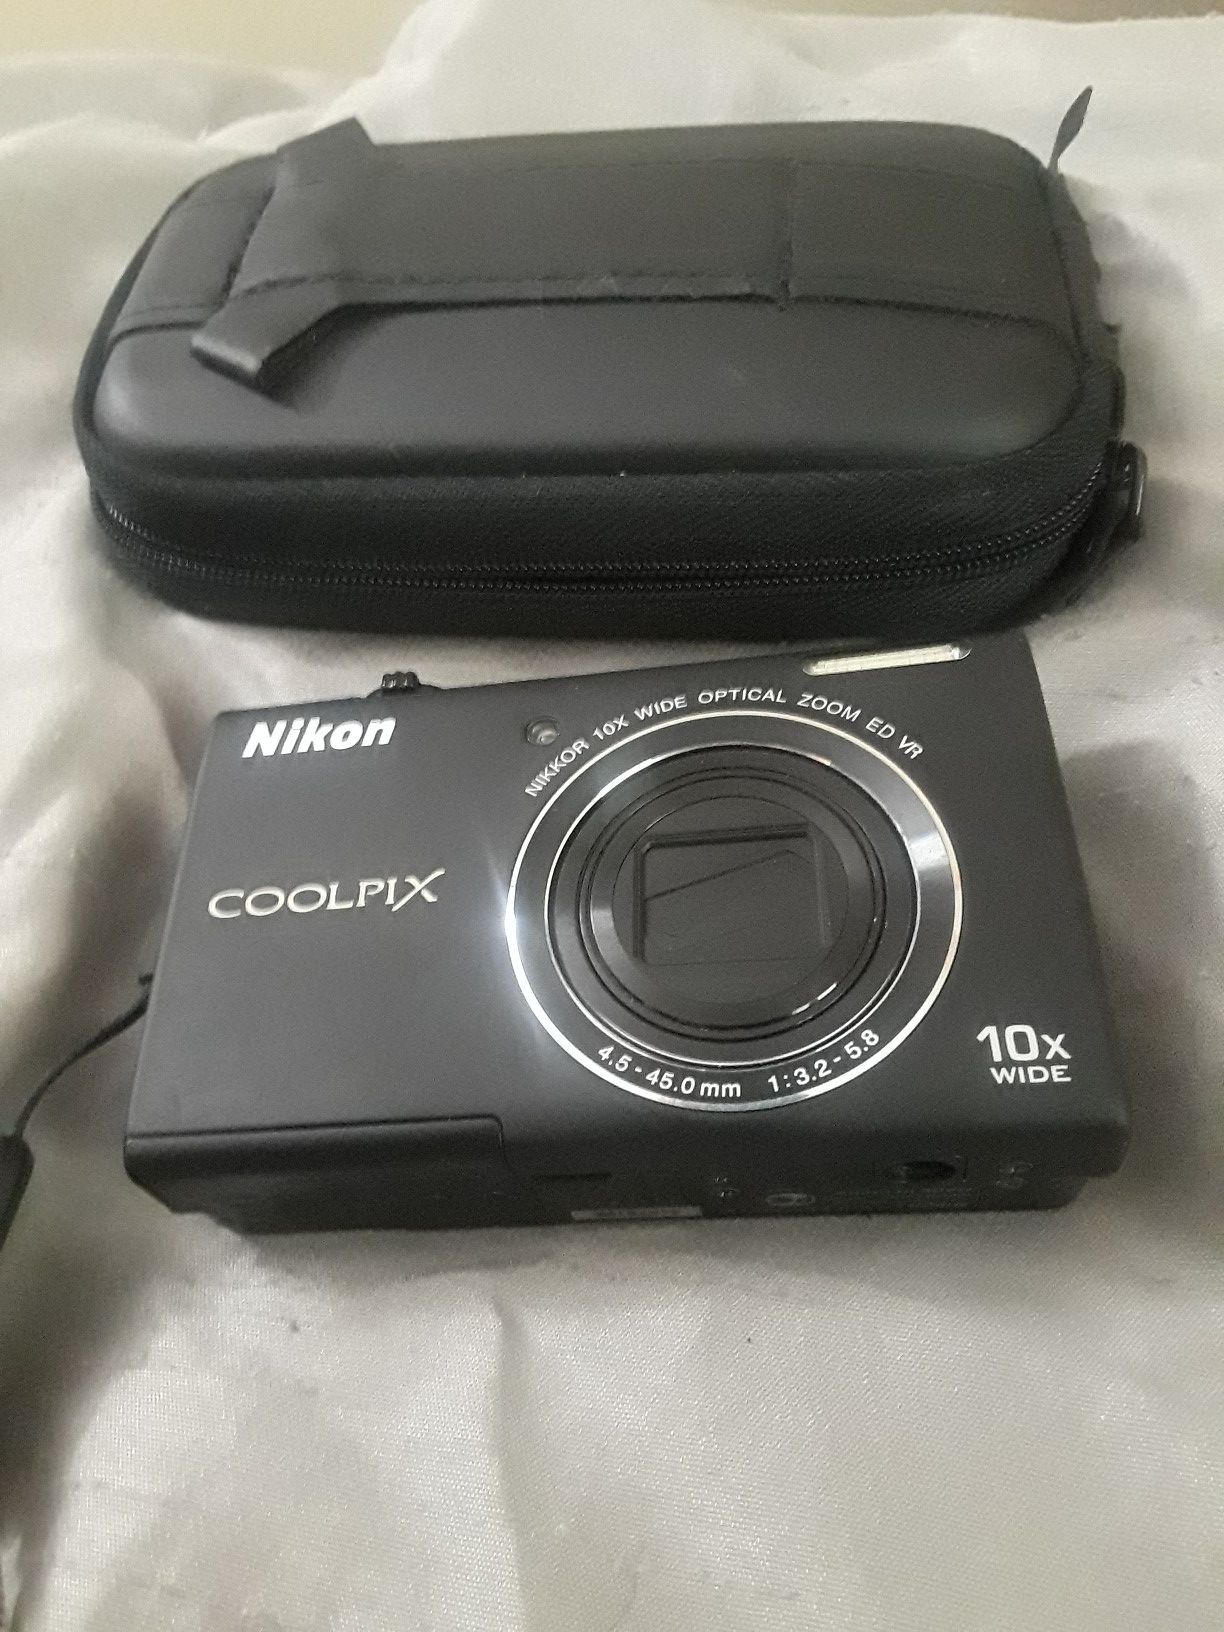 Nikon coolpix s6200 digital camera